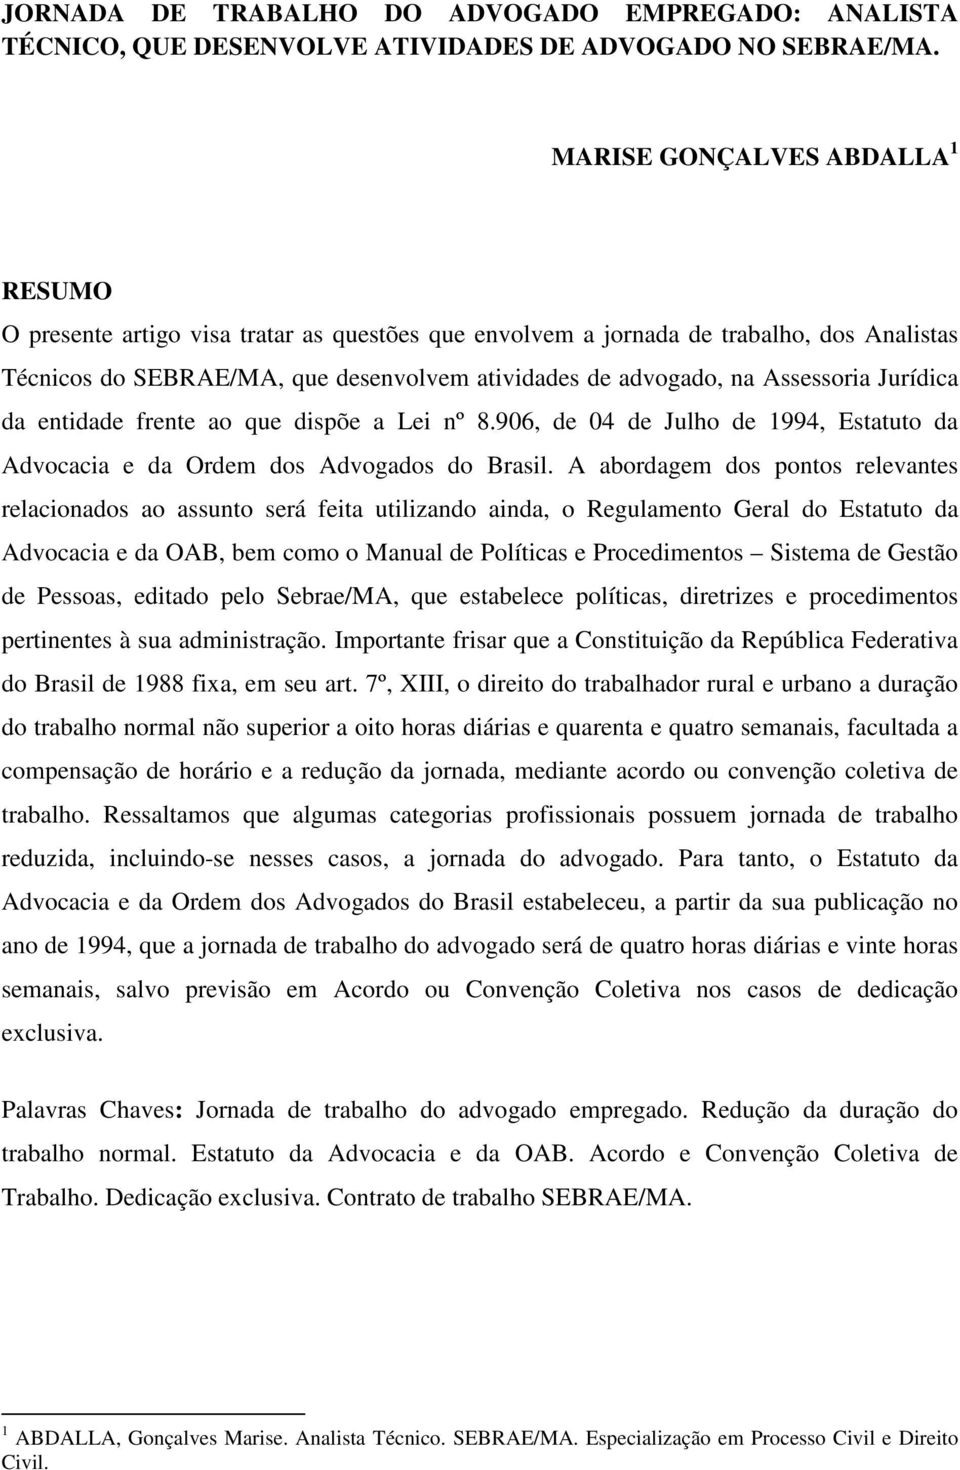 Assessoria Jurídica da entidade frente ao que dispõe a Lei nº 8.906, de 04 de Julho de 1994, Estatuto da Advocacia e da Ordem dos Advogados do Brasil.